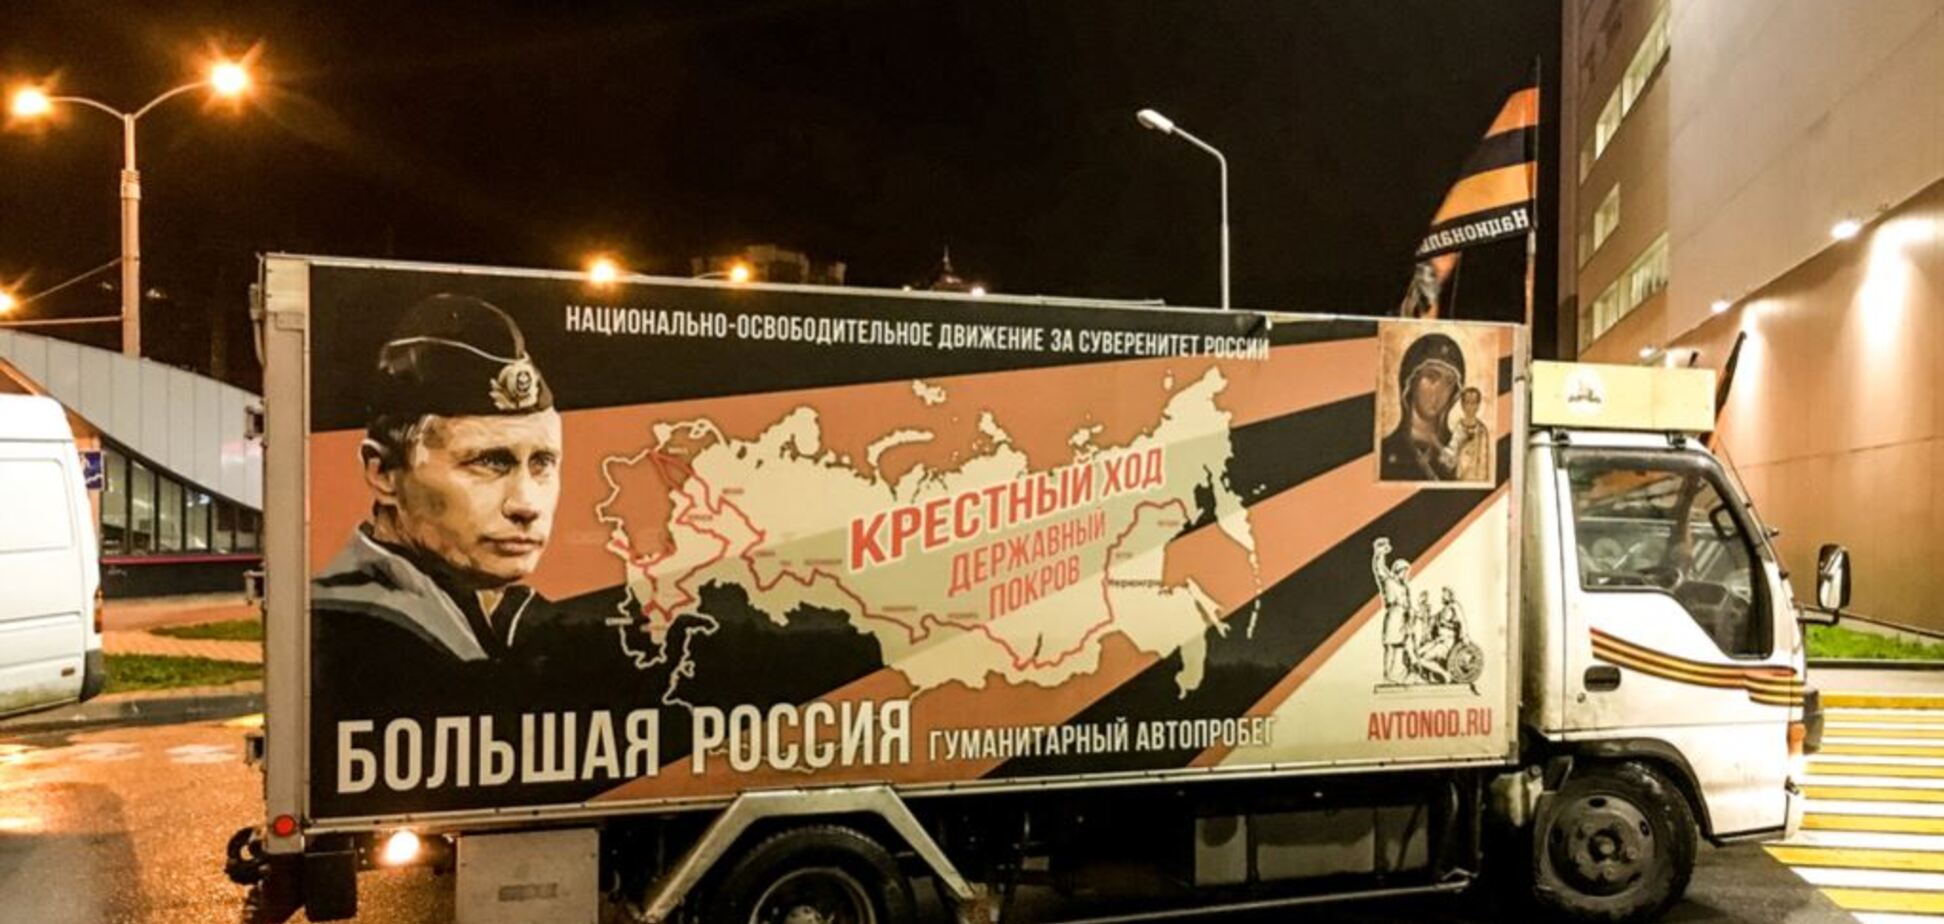 'Великая Россия': адепты Путина провели дерзкий 'колорадский' автопробег в Минске